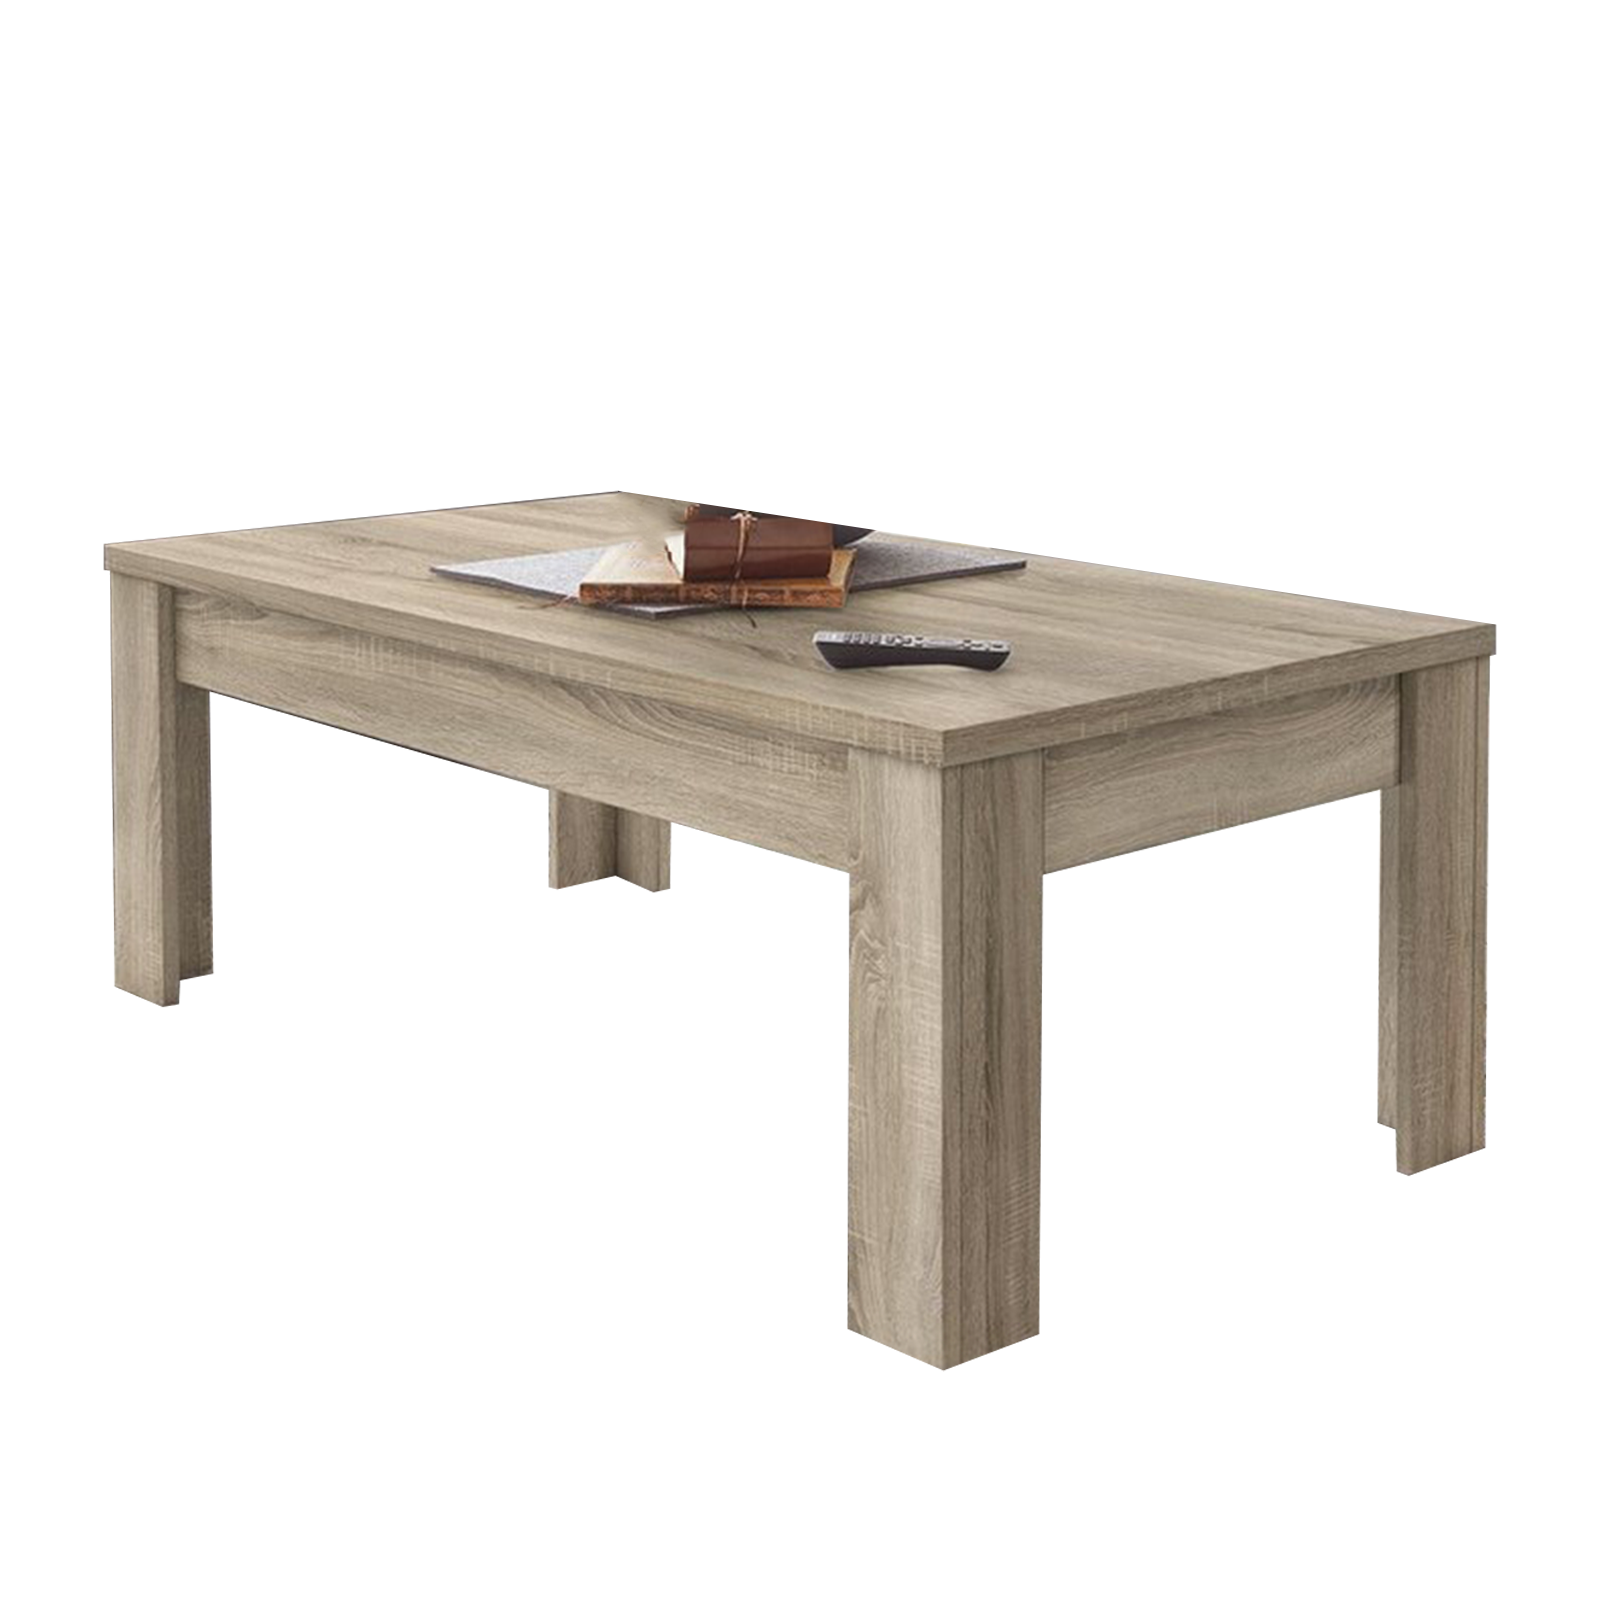 Tavolino basso da soggiorno Dama in legno di rovere cm 122x65 45h